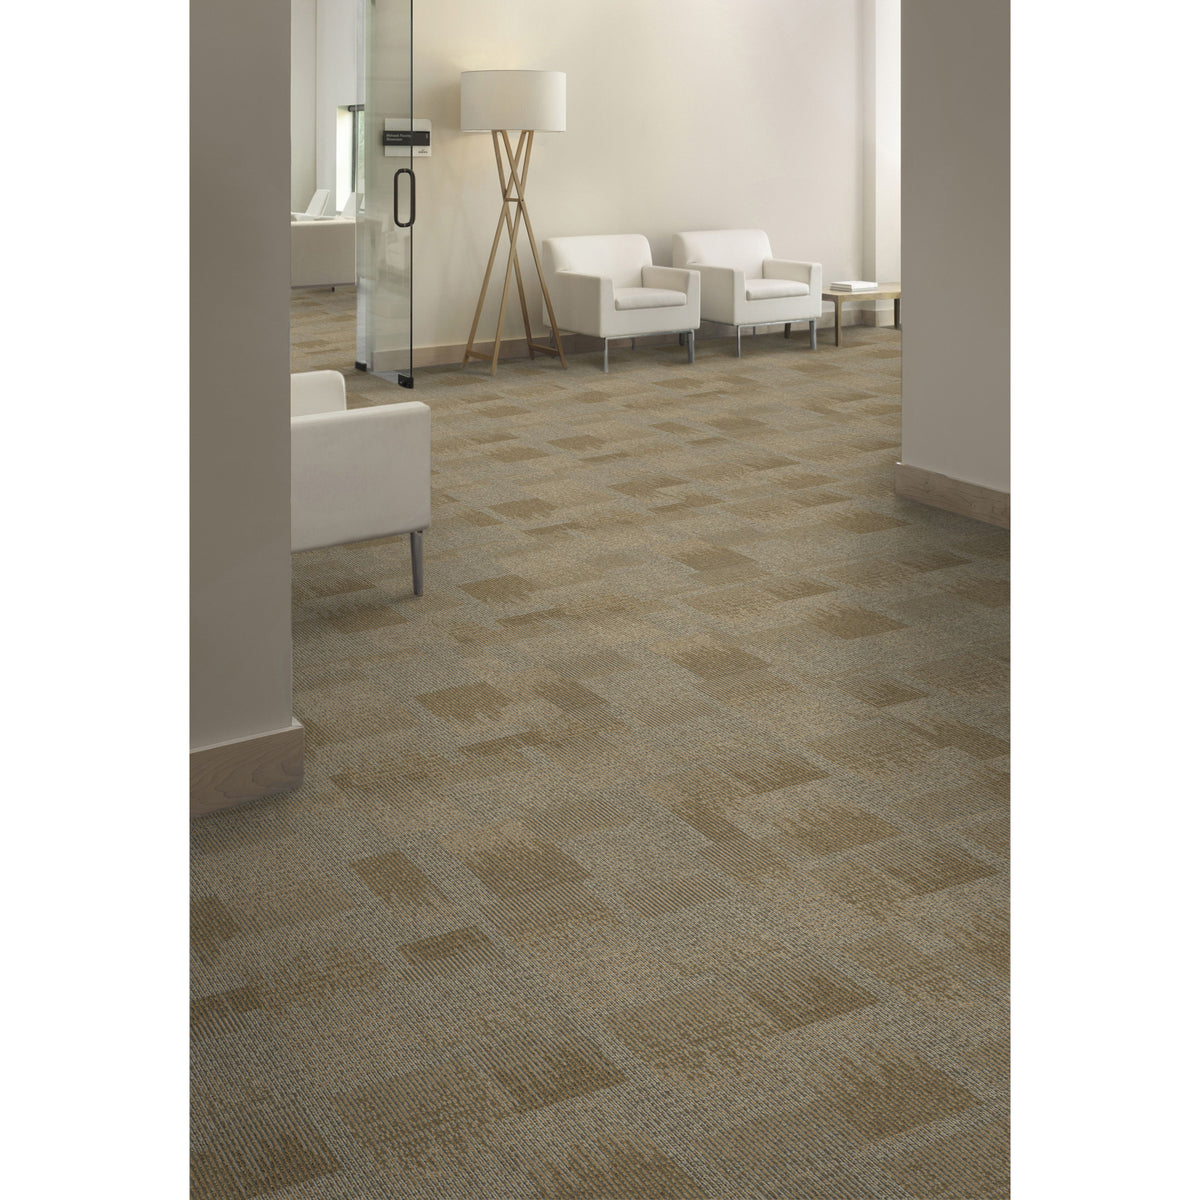 Aladdin Commercial - Commerce - Onward Bound - Carpet Tile - Seize Challenge - Room Scene